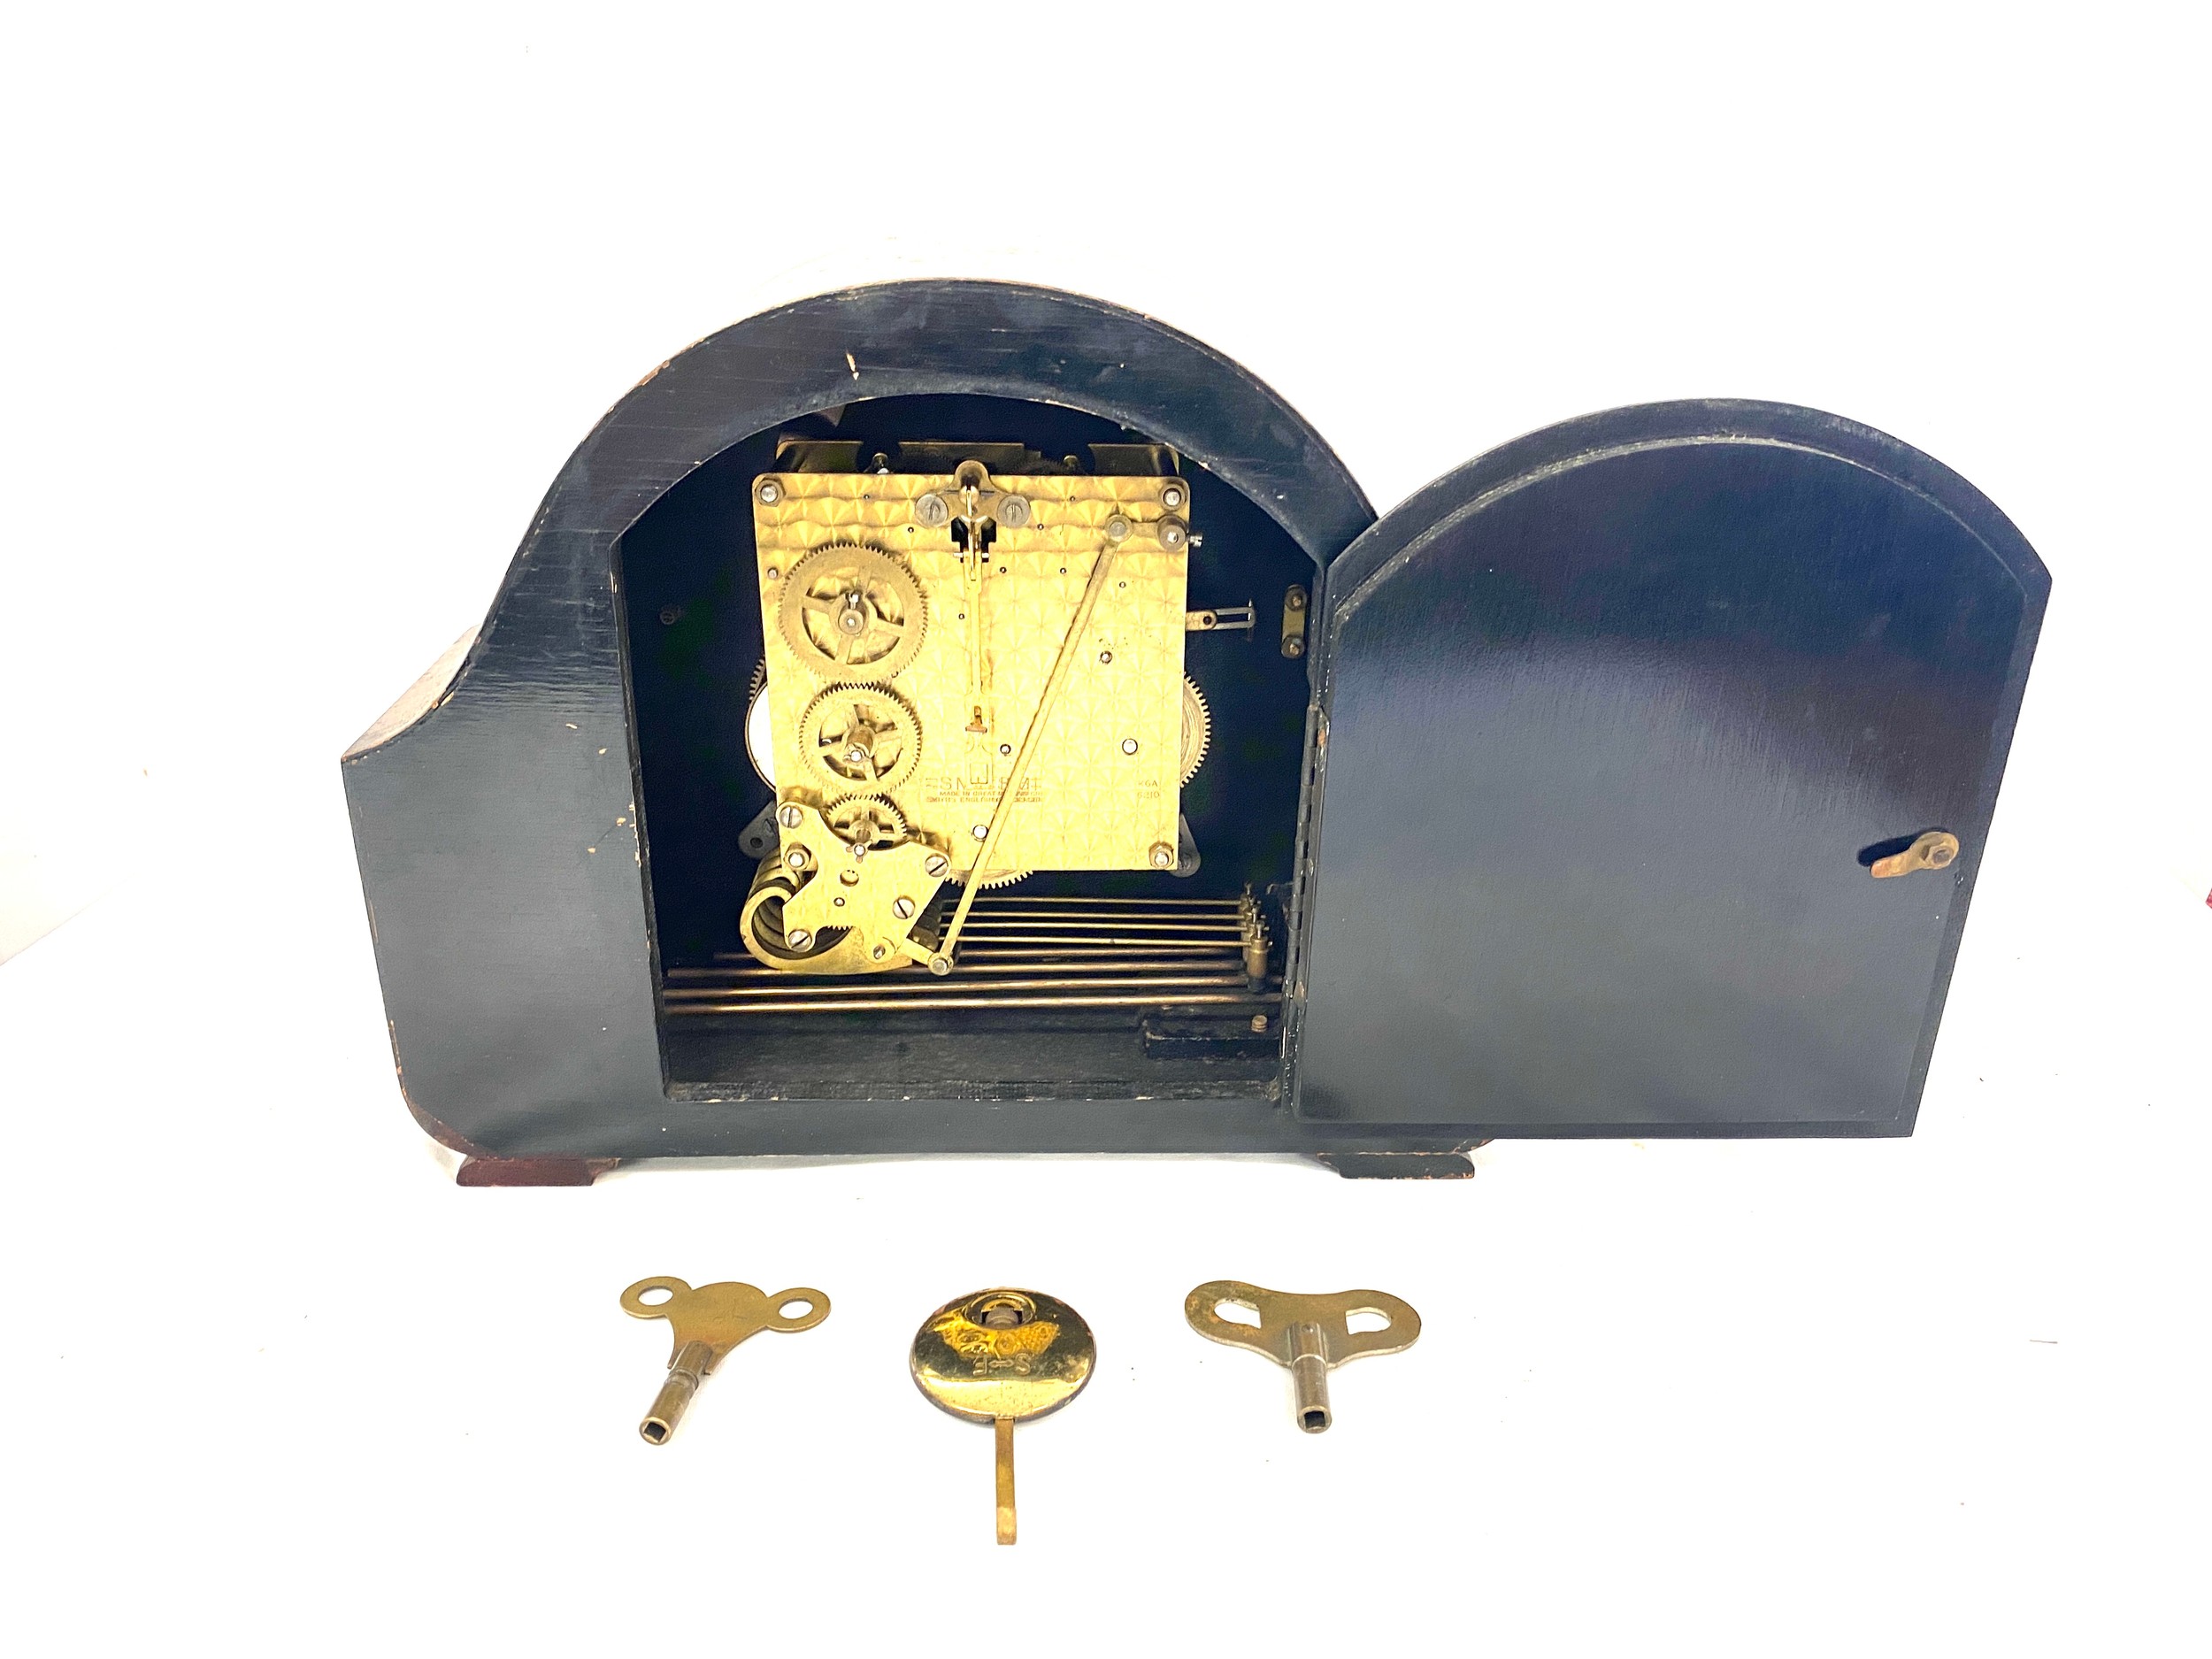 Smiths 3 Key hole mantle clock, with key and pendulum , untested - Image 2 of 4